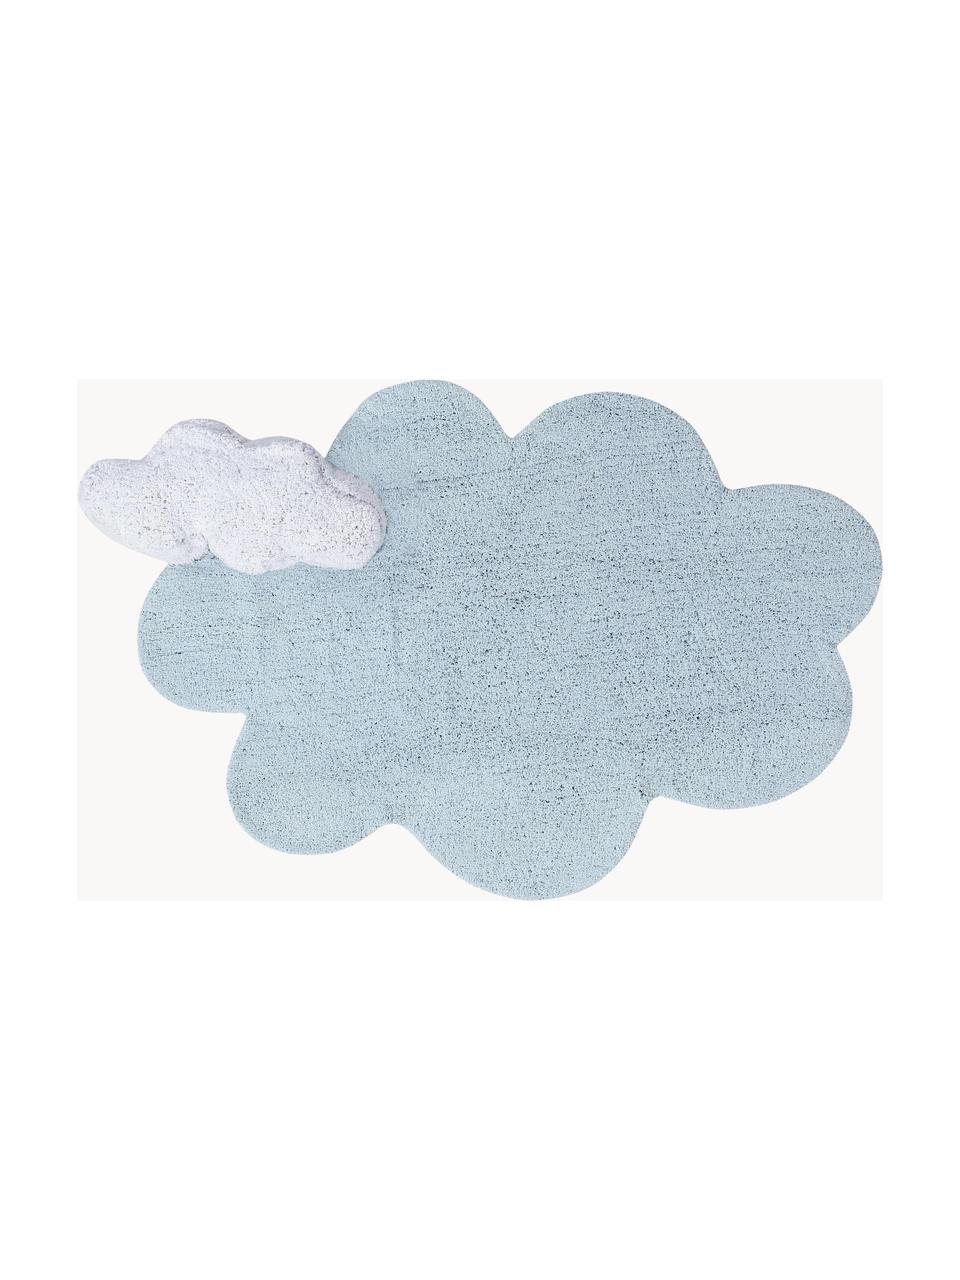 Handgeweven kindervloerkleed Dream met hoog-laag effect, Bovenzijde: 97% katoen, 3% kunstvezel, Onderzijde: 100% katoen, Lichtblauw, wit, B 110 x L 170 cm (maat S)